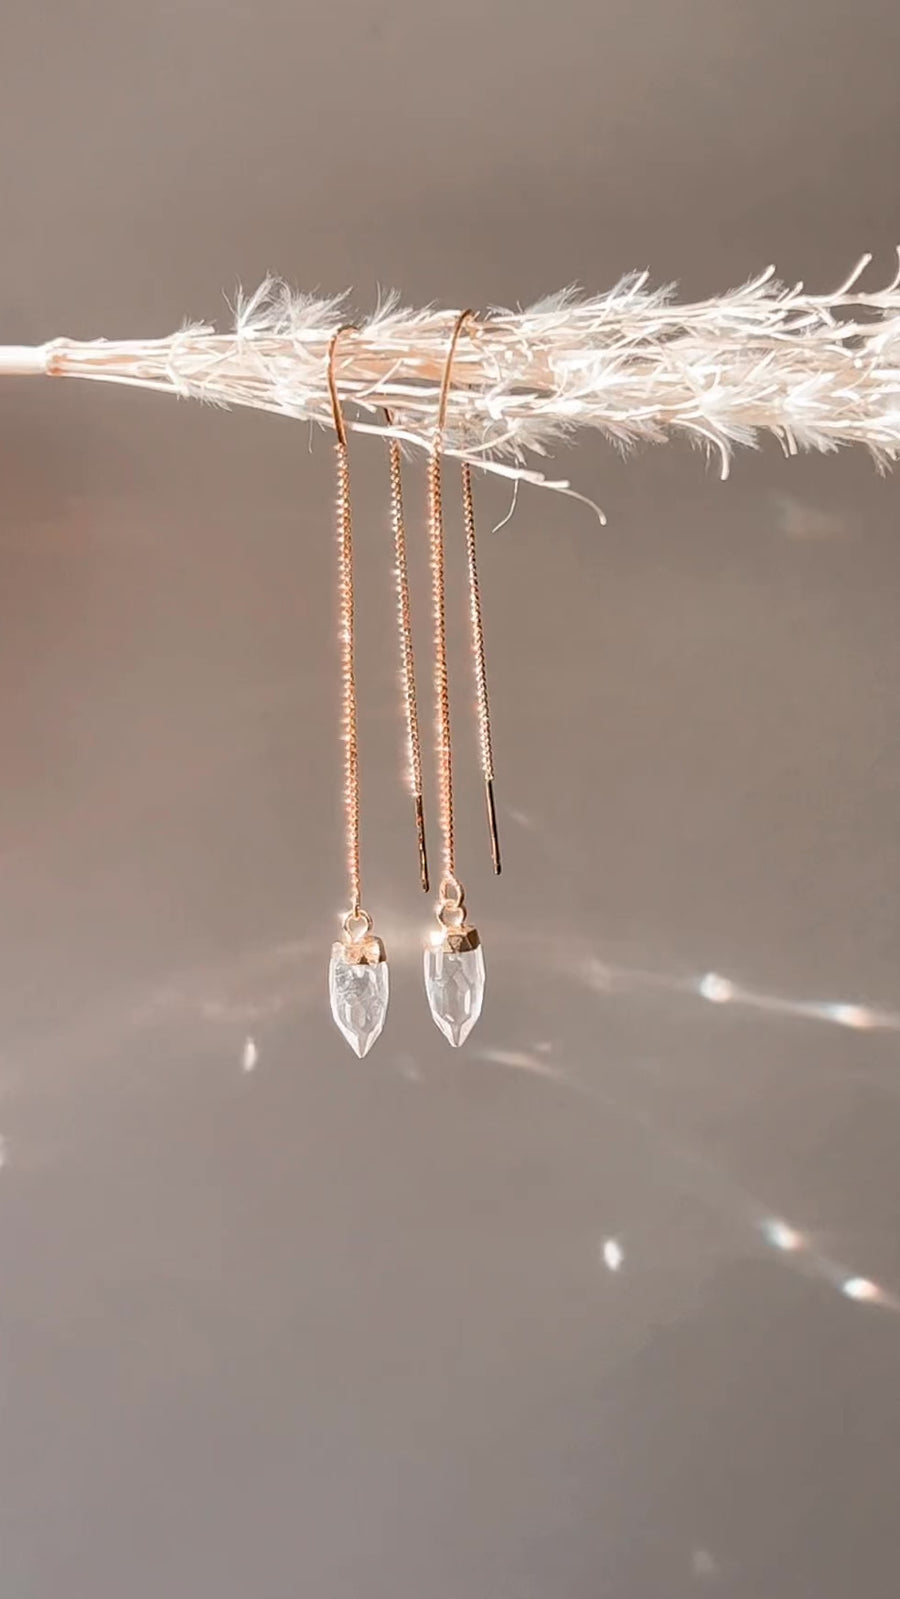 Faceted quartz suncatcher threader earrings